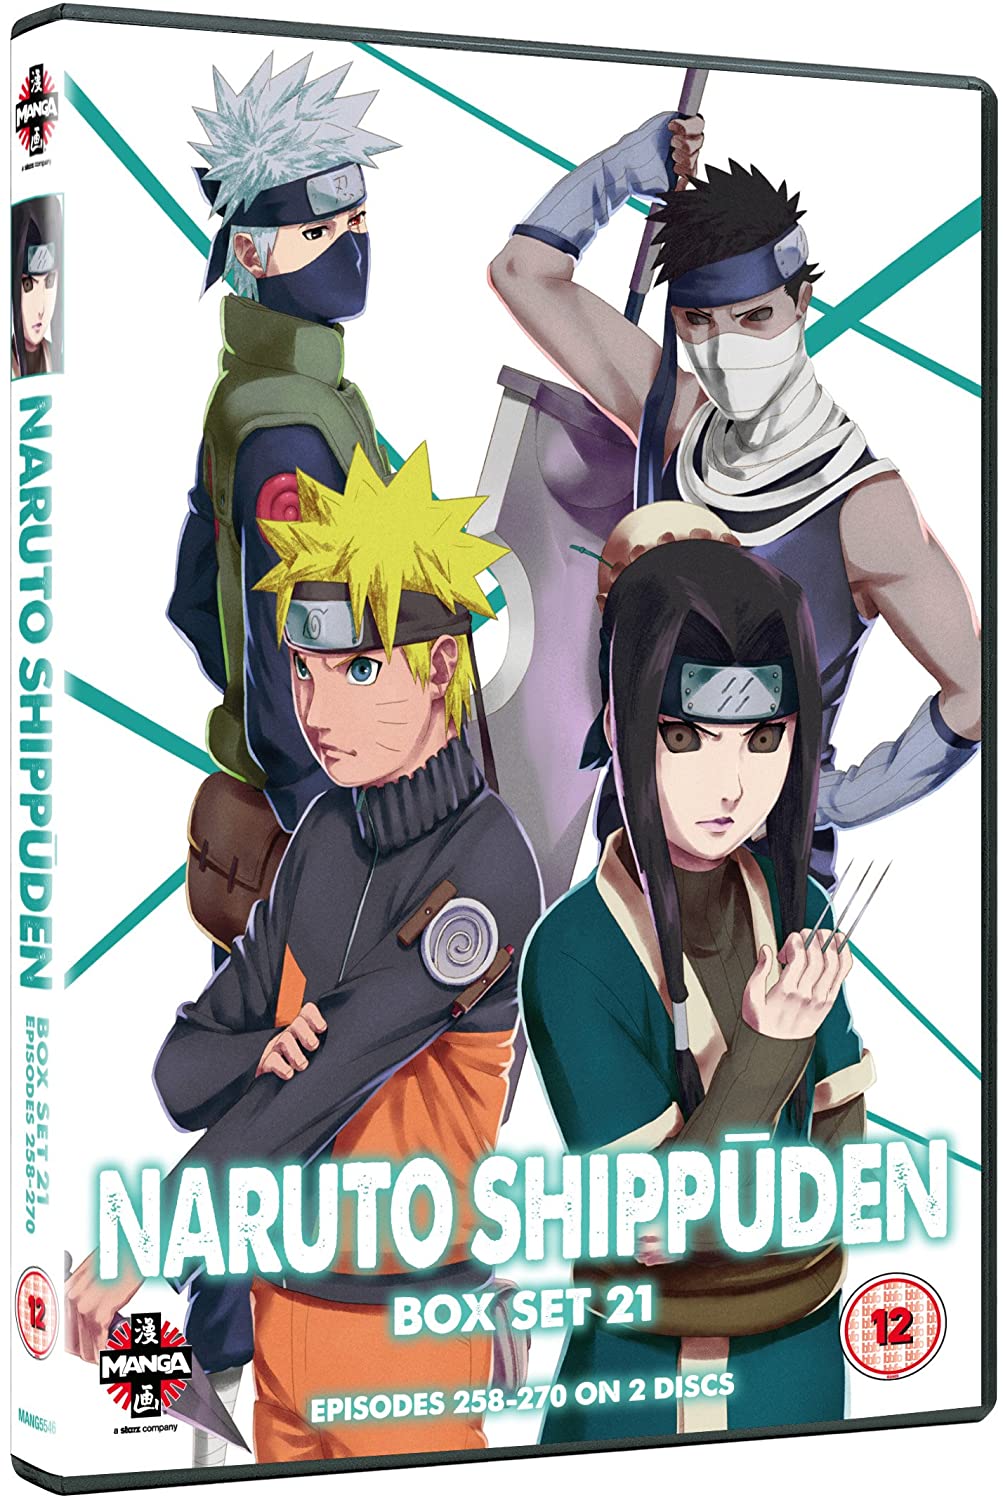 Naruto Shippuden 21 (Episodes 258-270) - Action fiction [DVD]